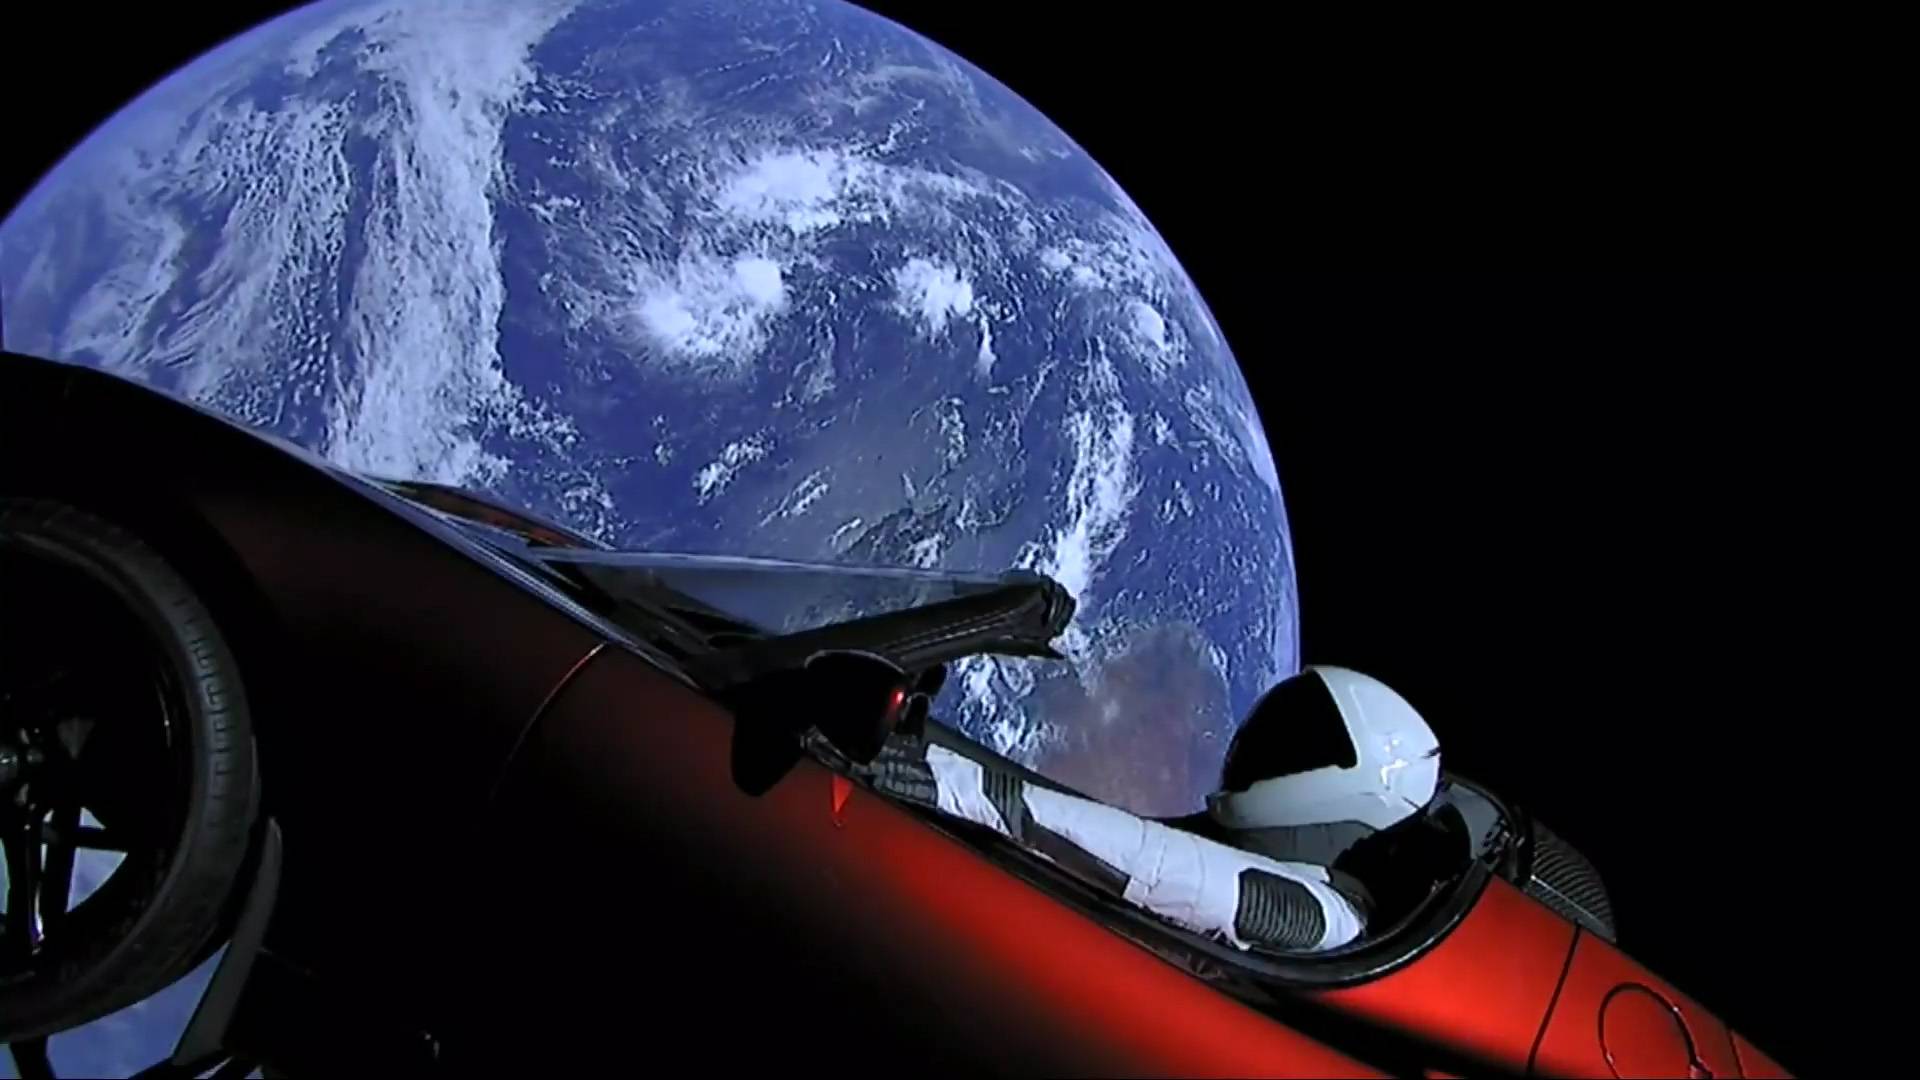 “بالفيديو والصور” إيلون ماسك يطلق تيسلا رودستر إلى المريخ في أقوى صاروخ بالعالم